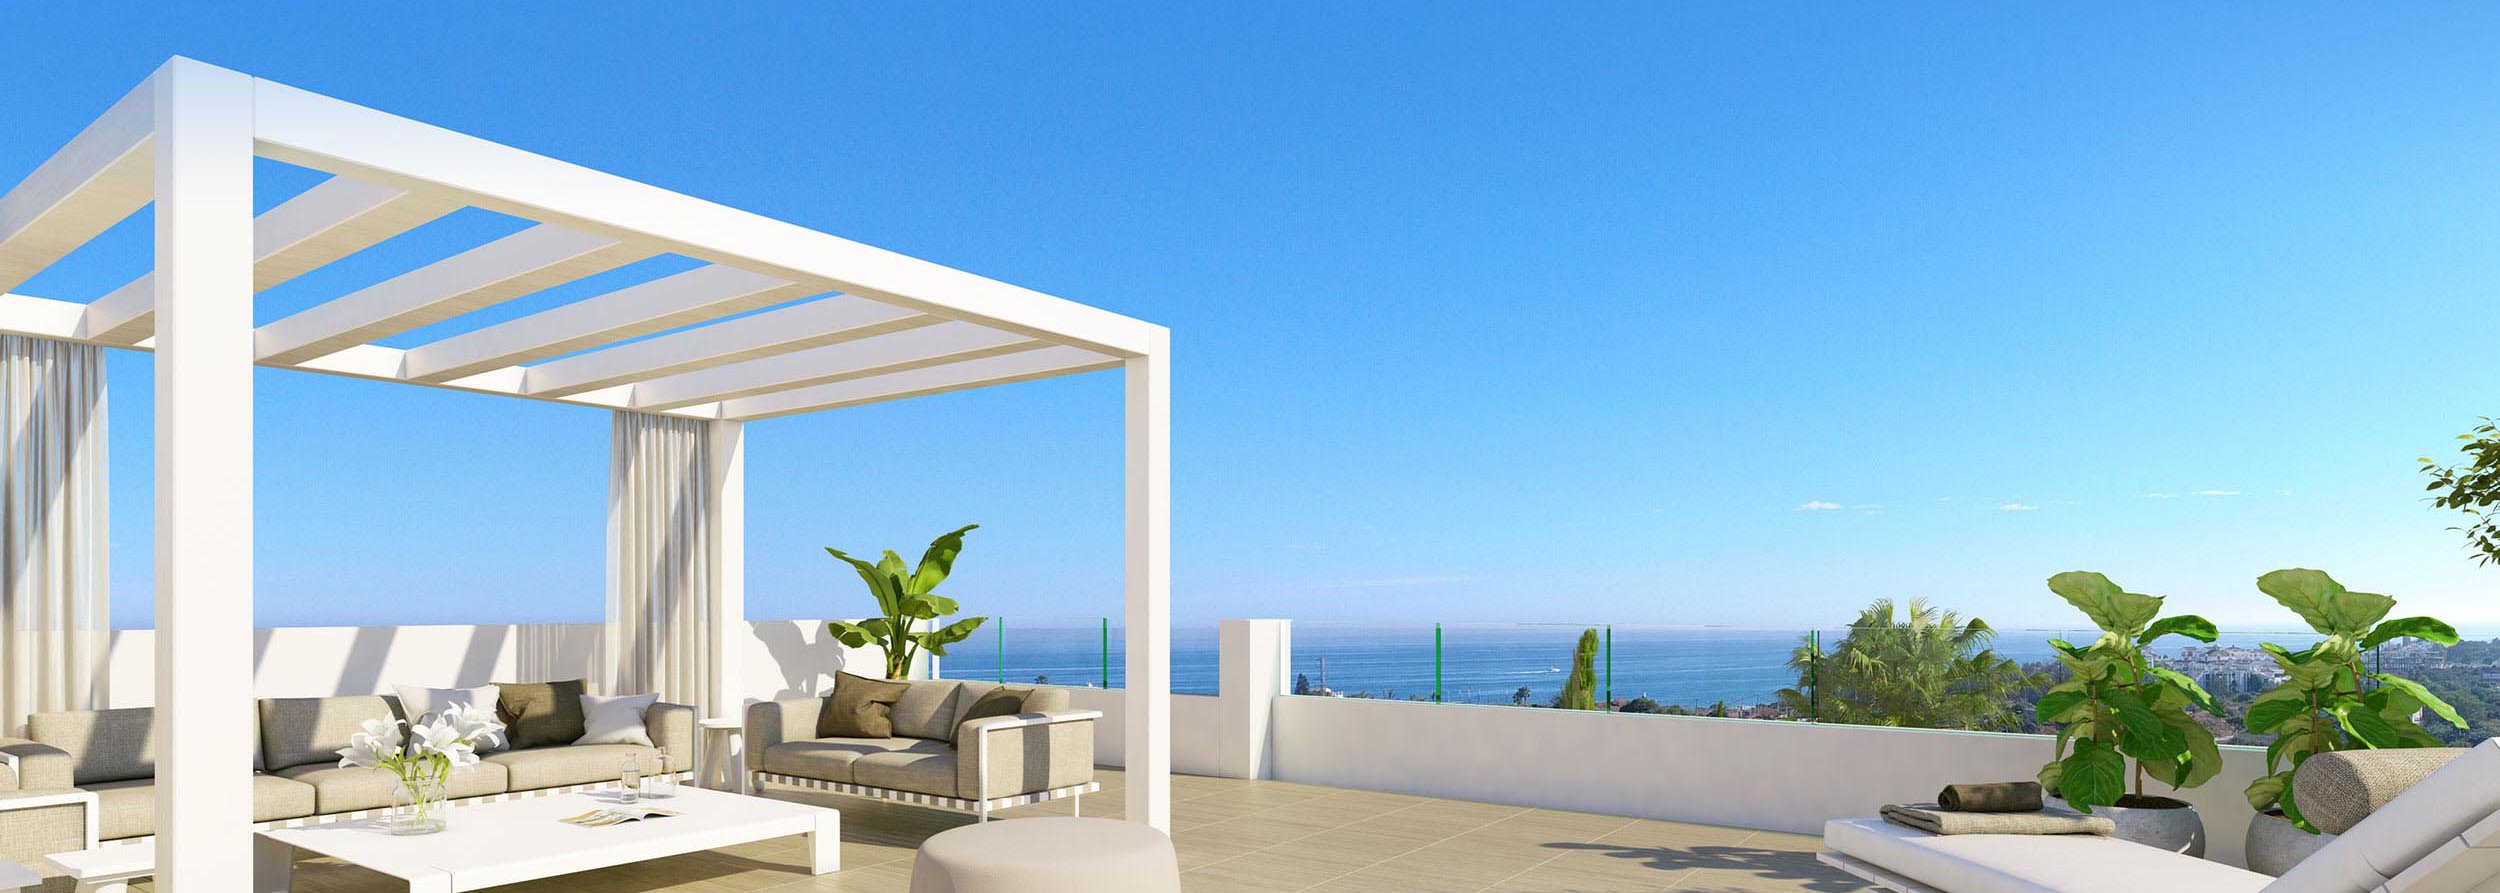 Properties for sale in Spain - Luxury Villa